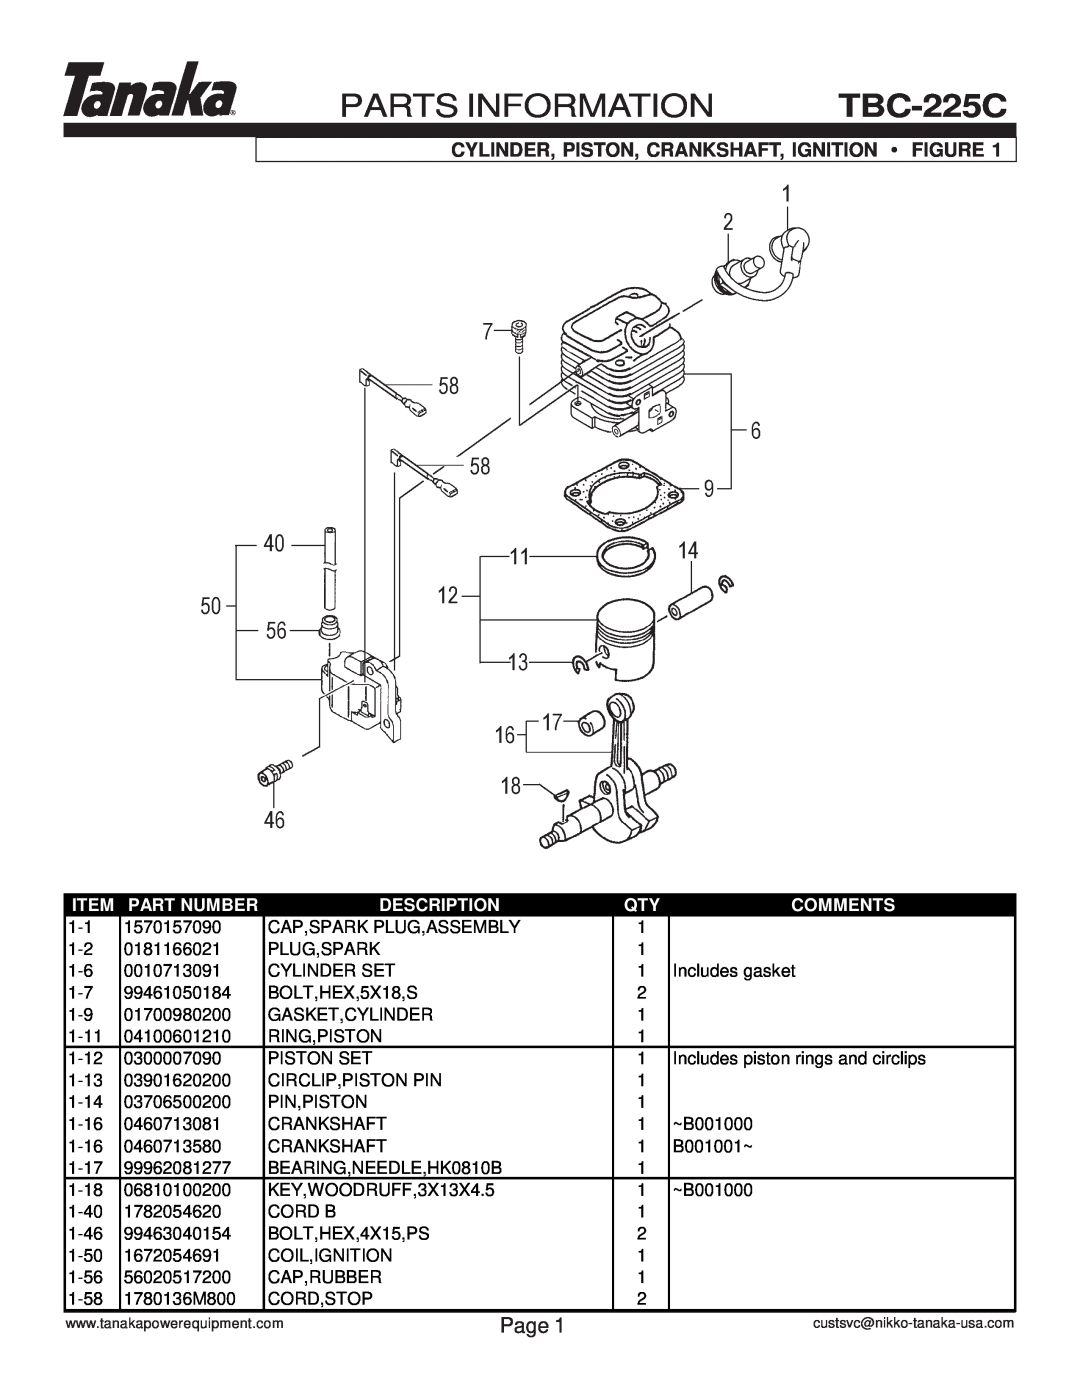 Tanaka TBC-225C Parts Information, Cylinder, Piston, Crankshaft, Ignition Figure, Page, Part Number, Description, Comments 